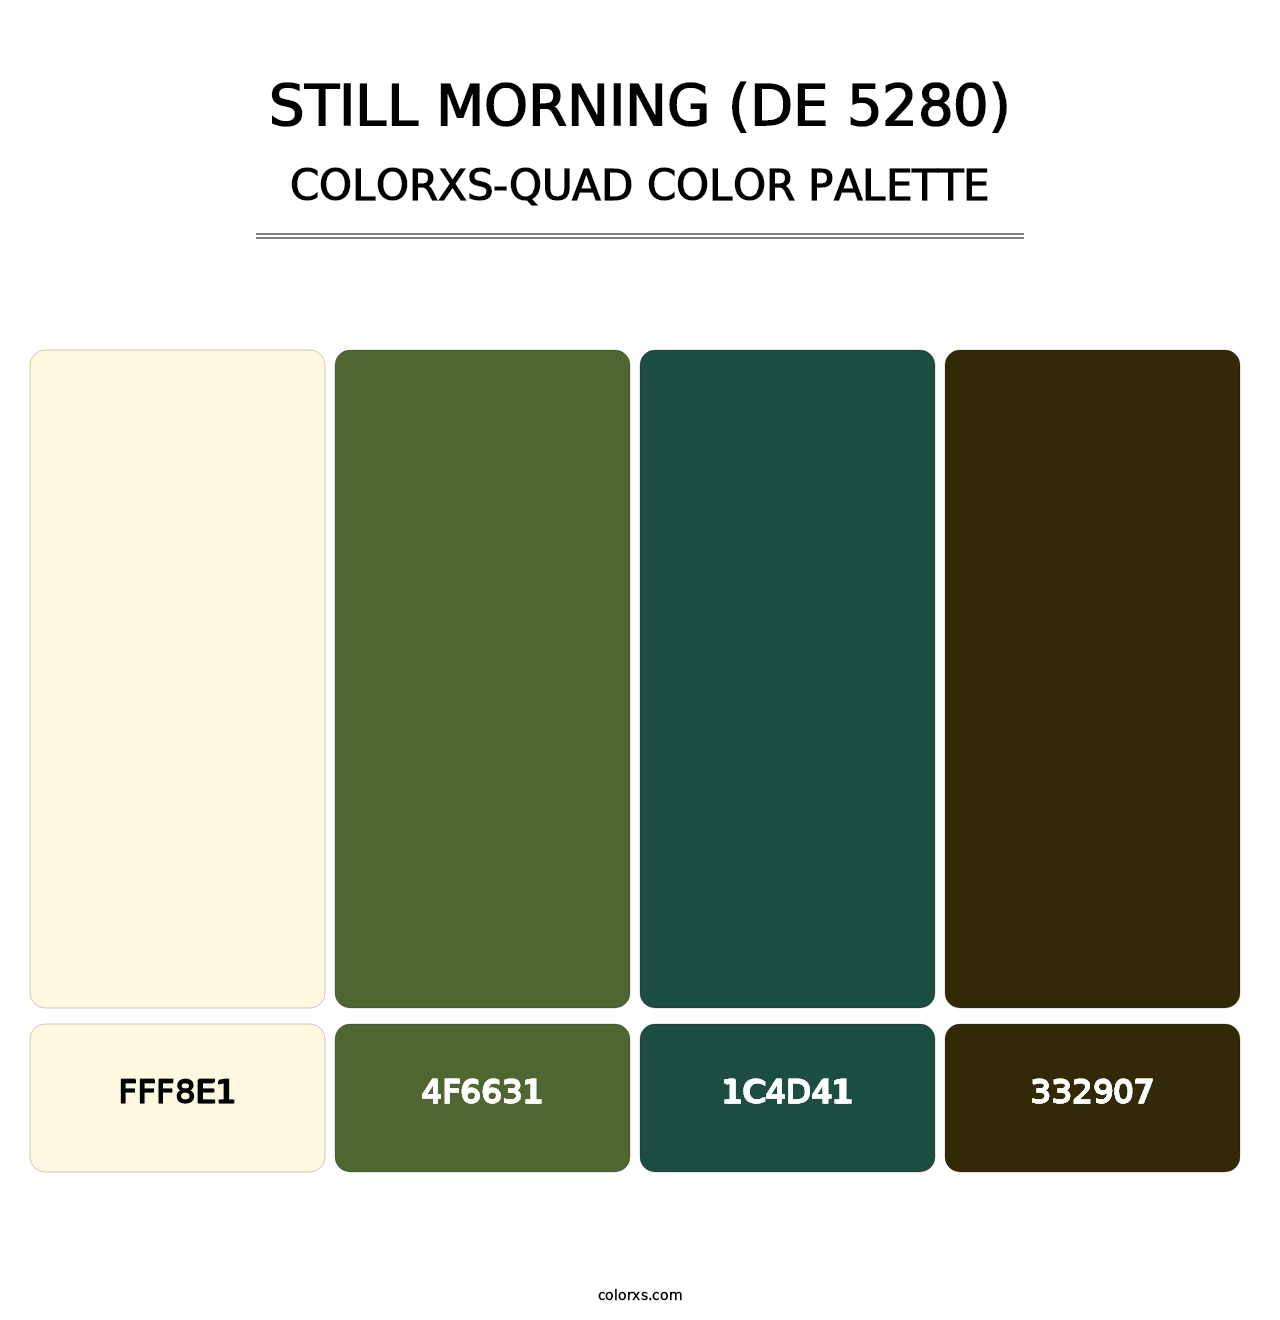 Still Morning (DE 5280) - Colorxs Quad Palette